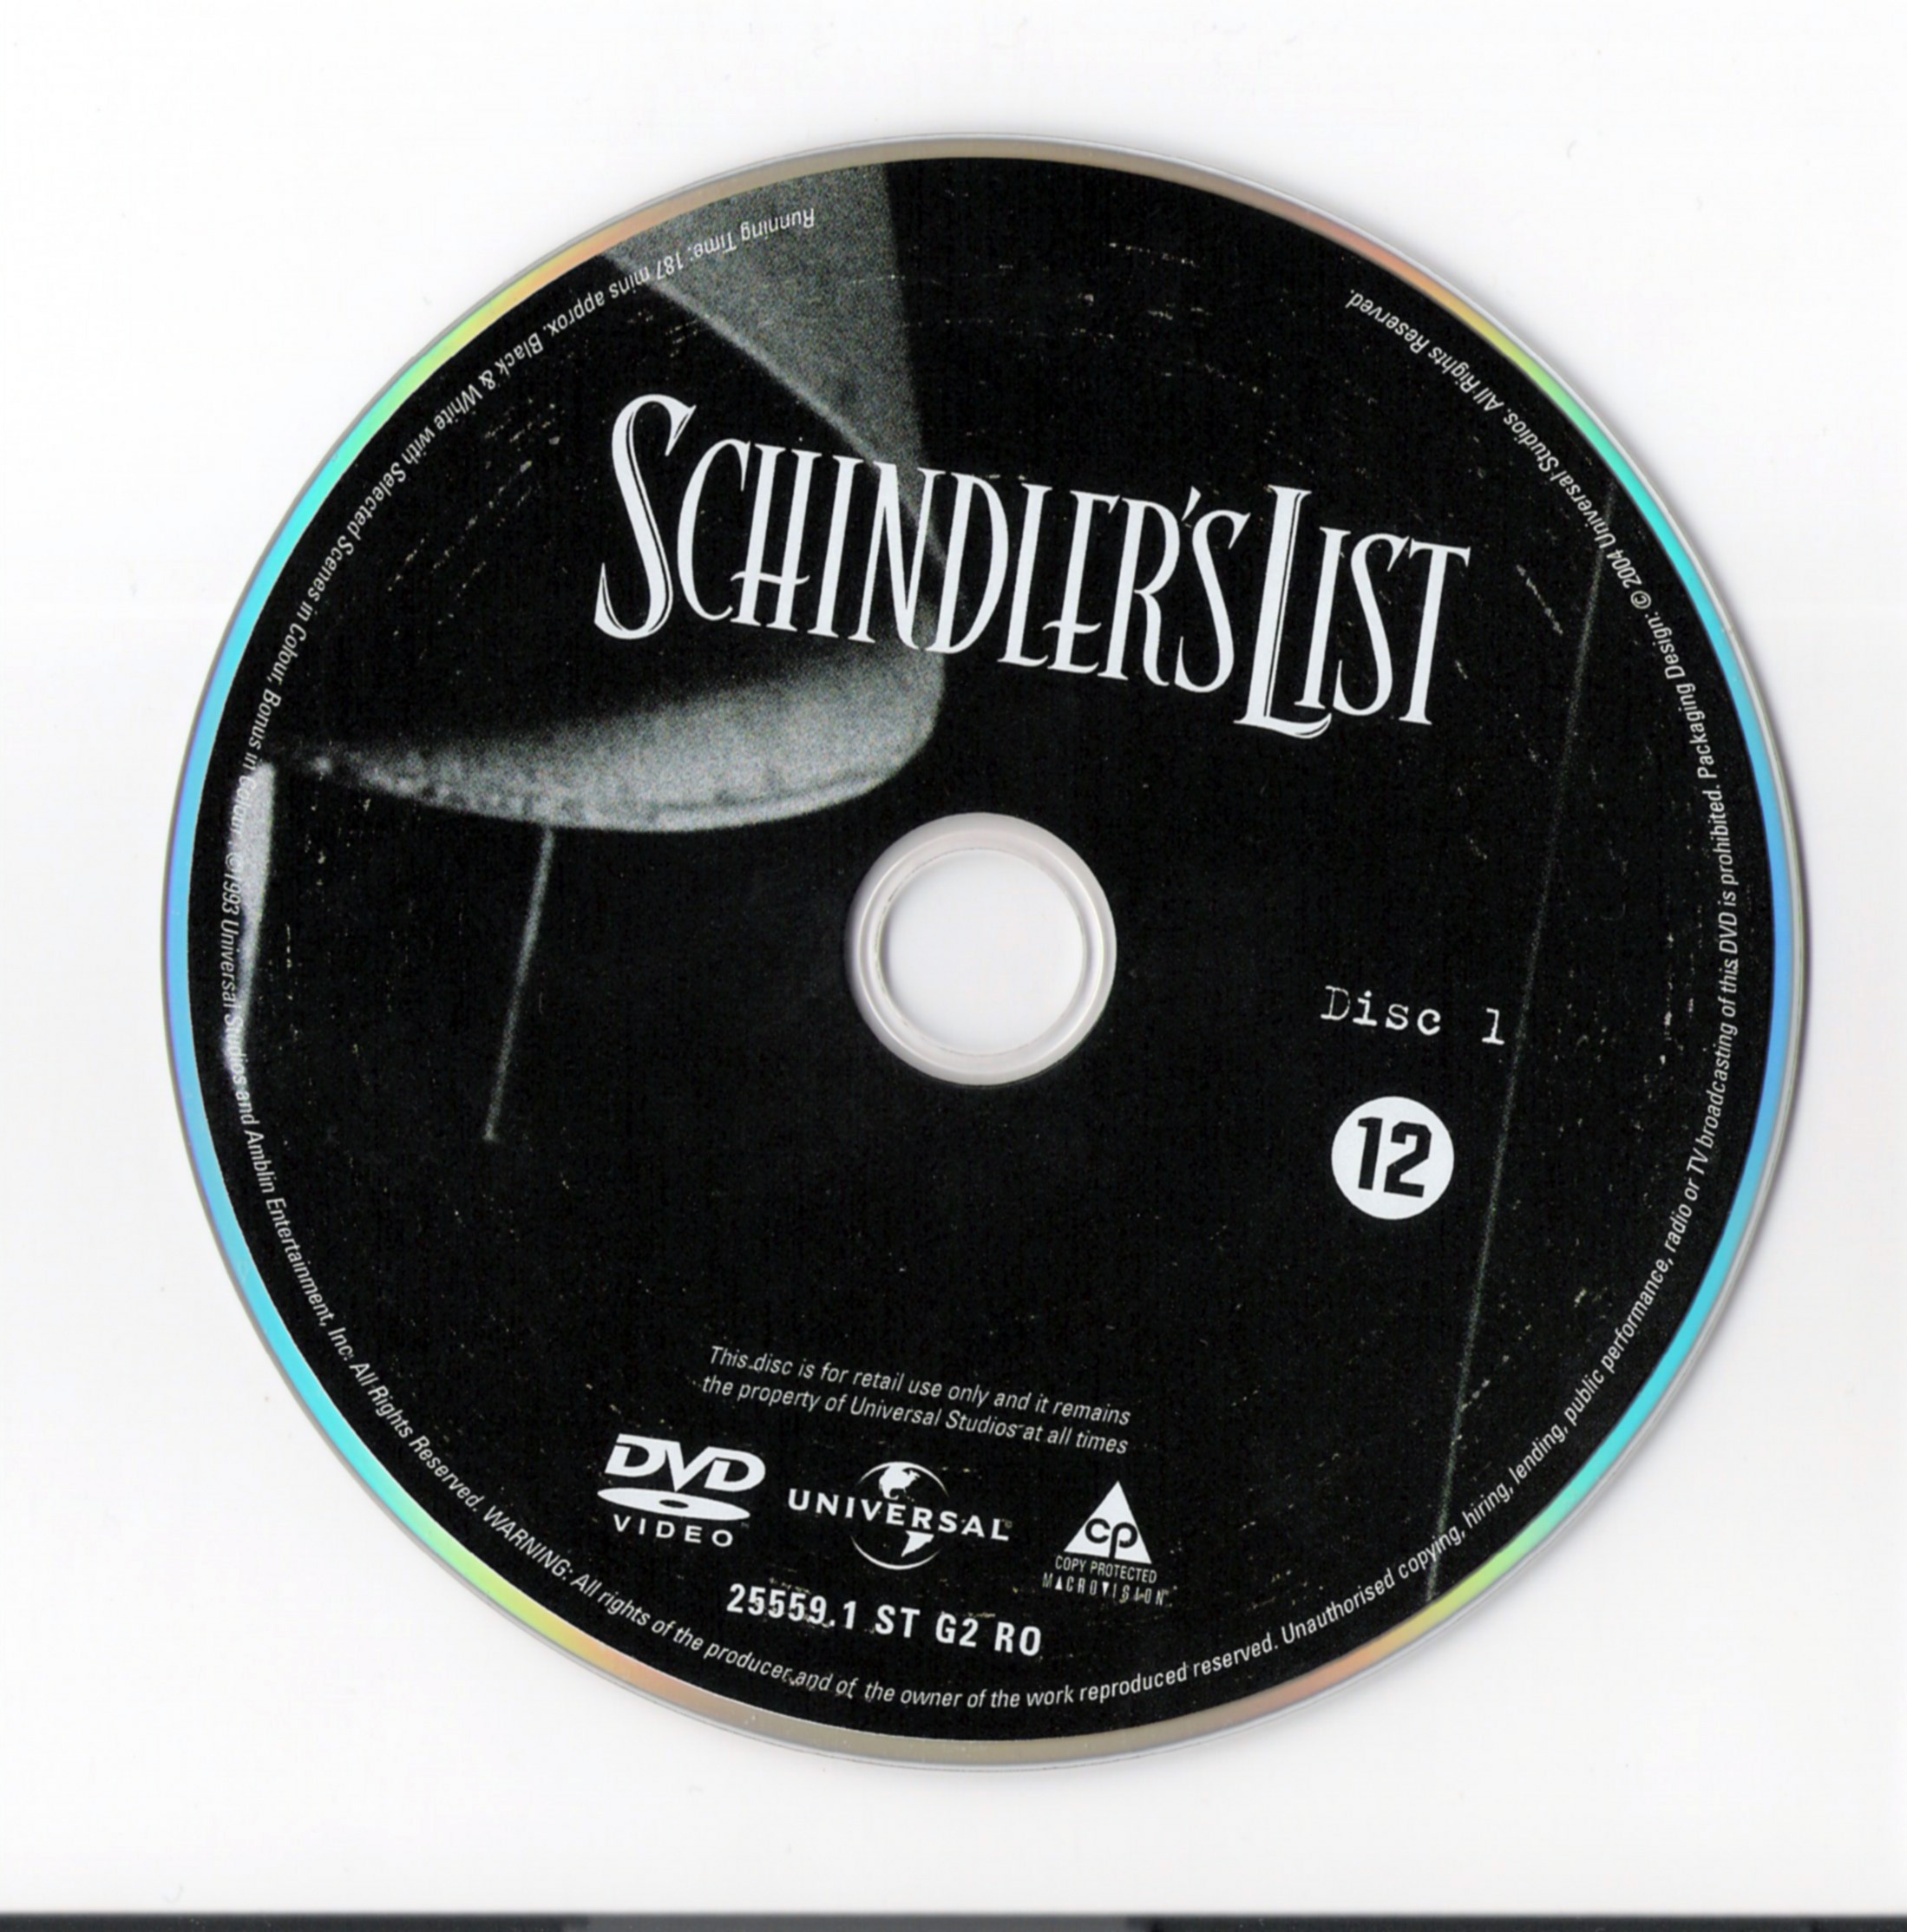 La liste de Schindler DISC 1